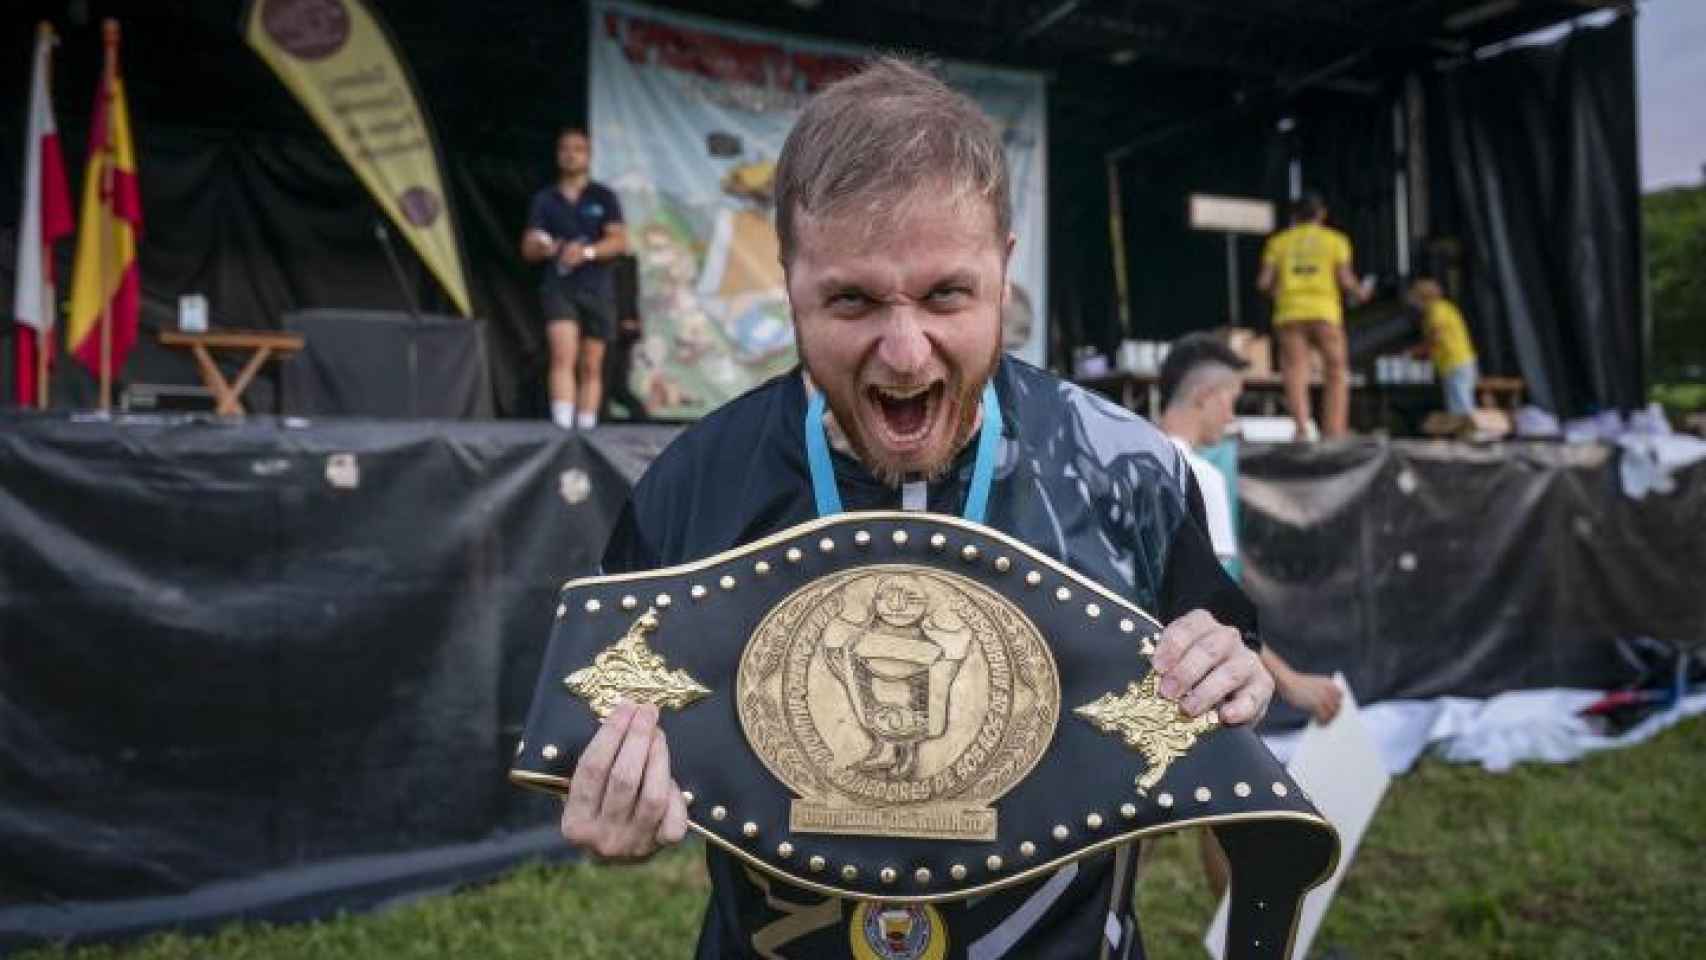 ValFerrer, posando con el cinturón de Campeón Mundial de Comedores de Sobaos de Ambrosero.